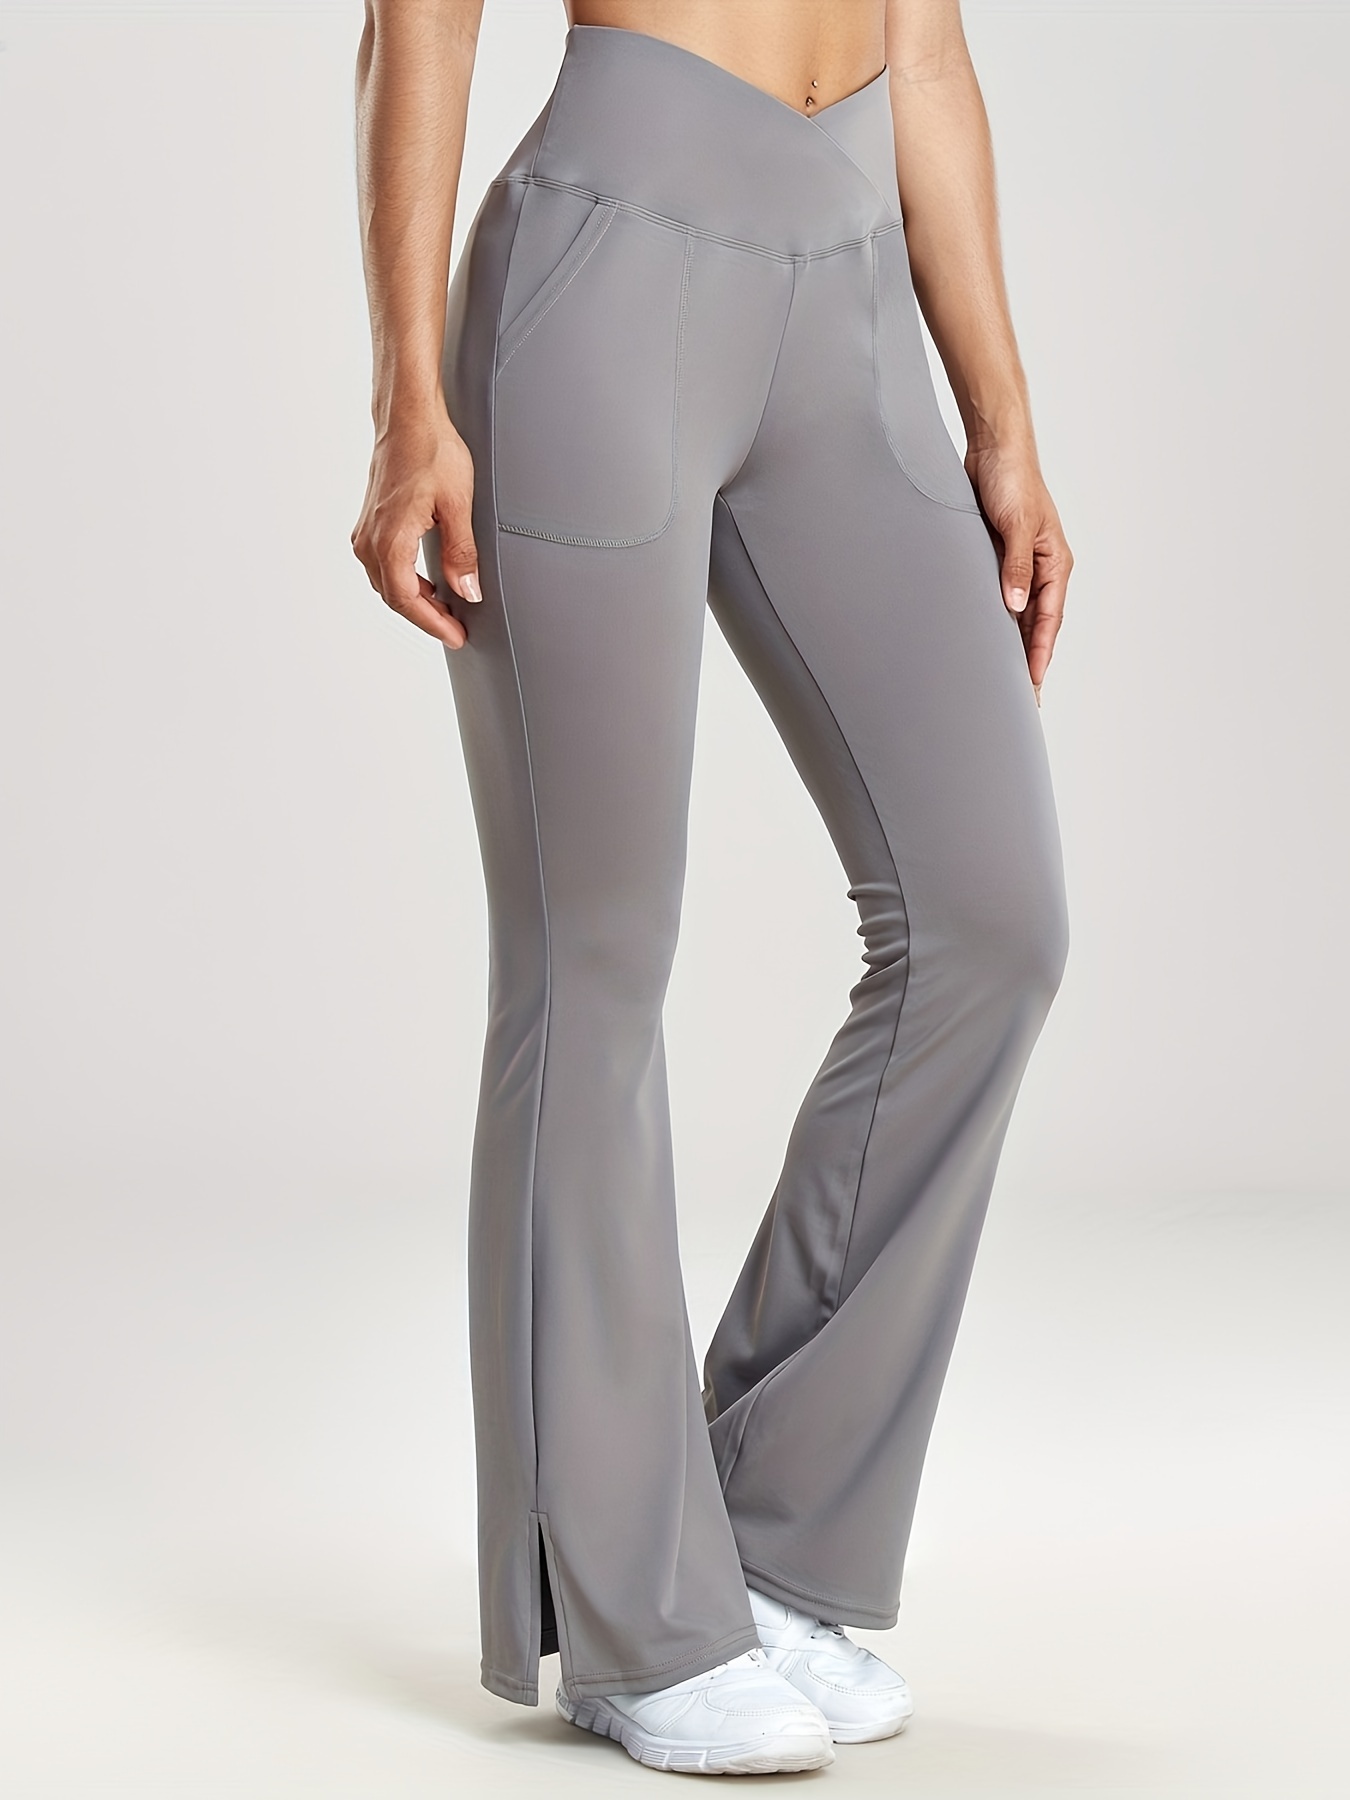 NEW!! Member's Mark Women's Everyday Flare Leg Yoga Pants Variety #459